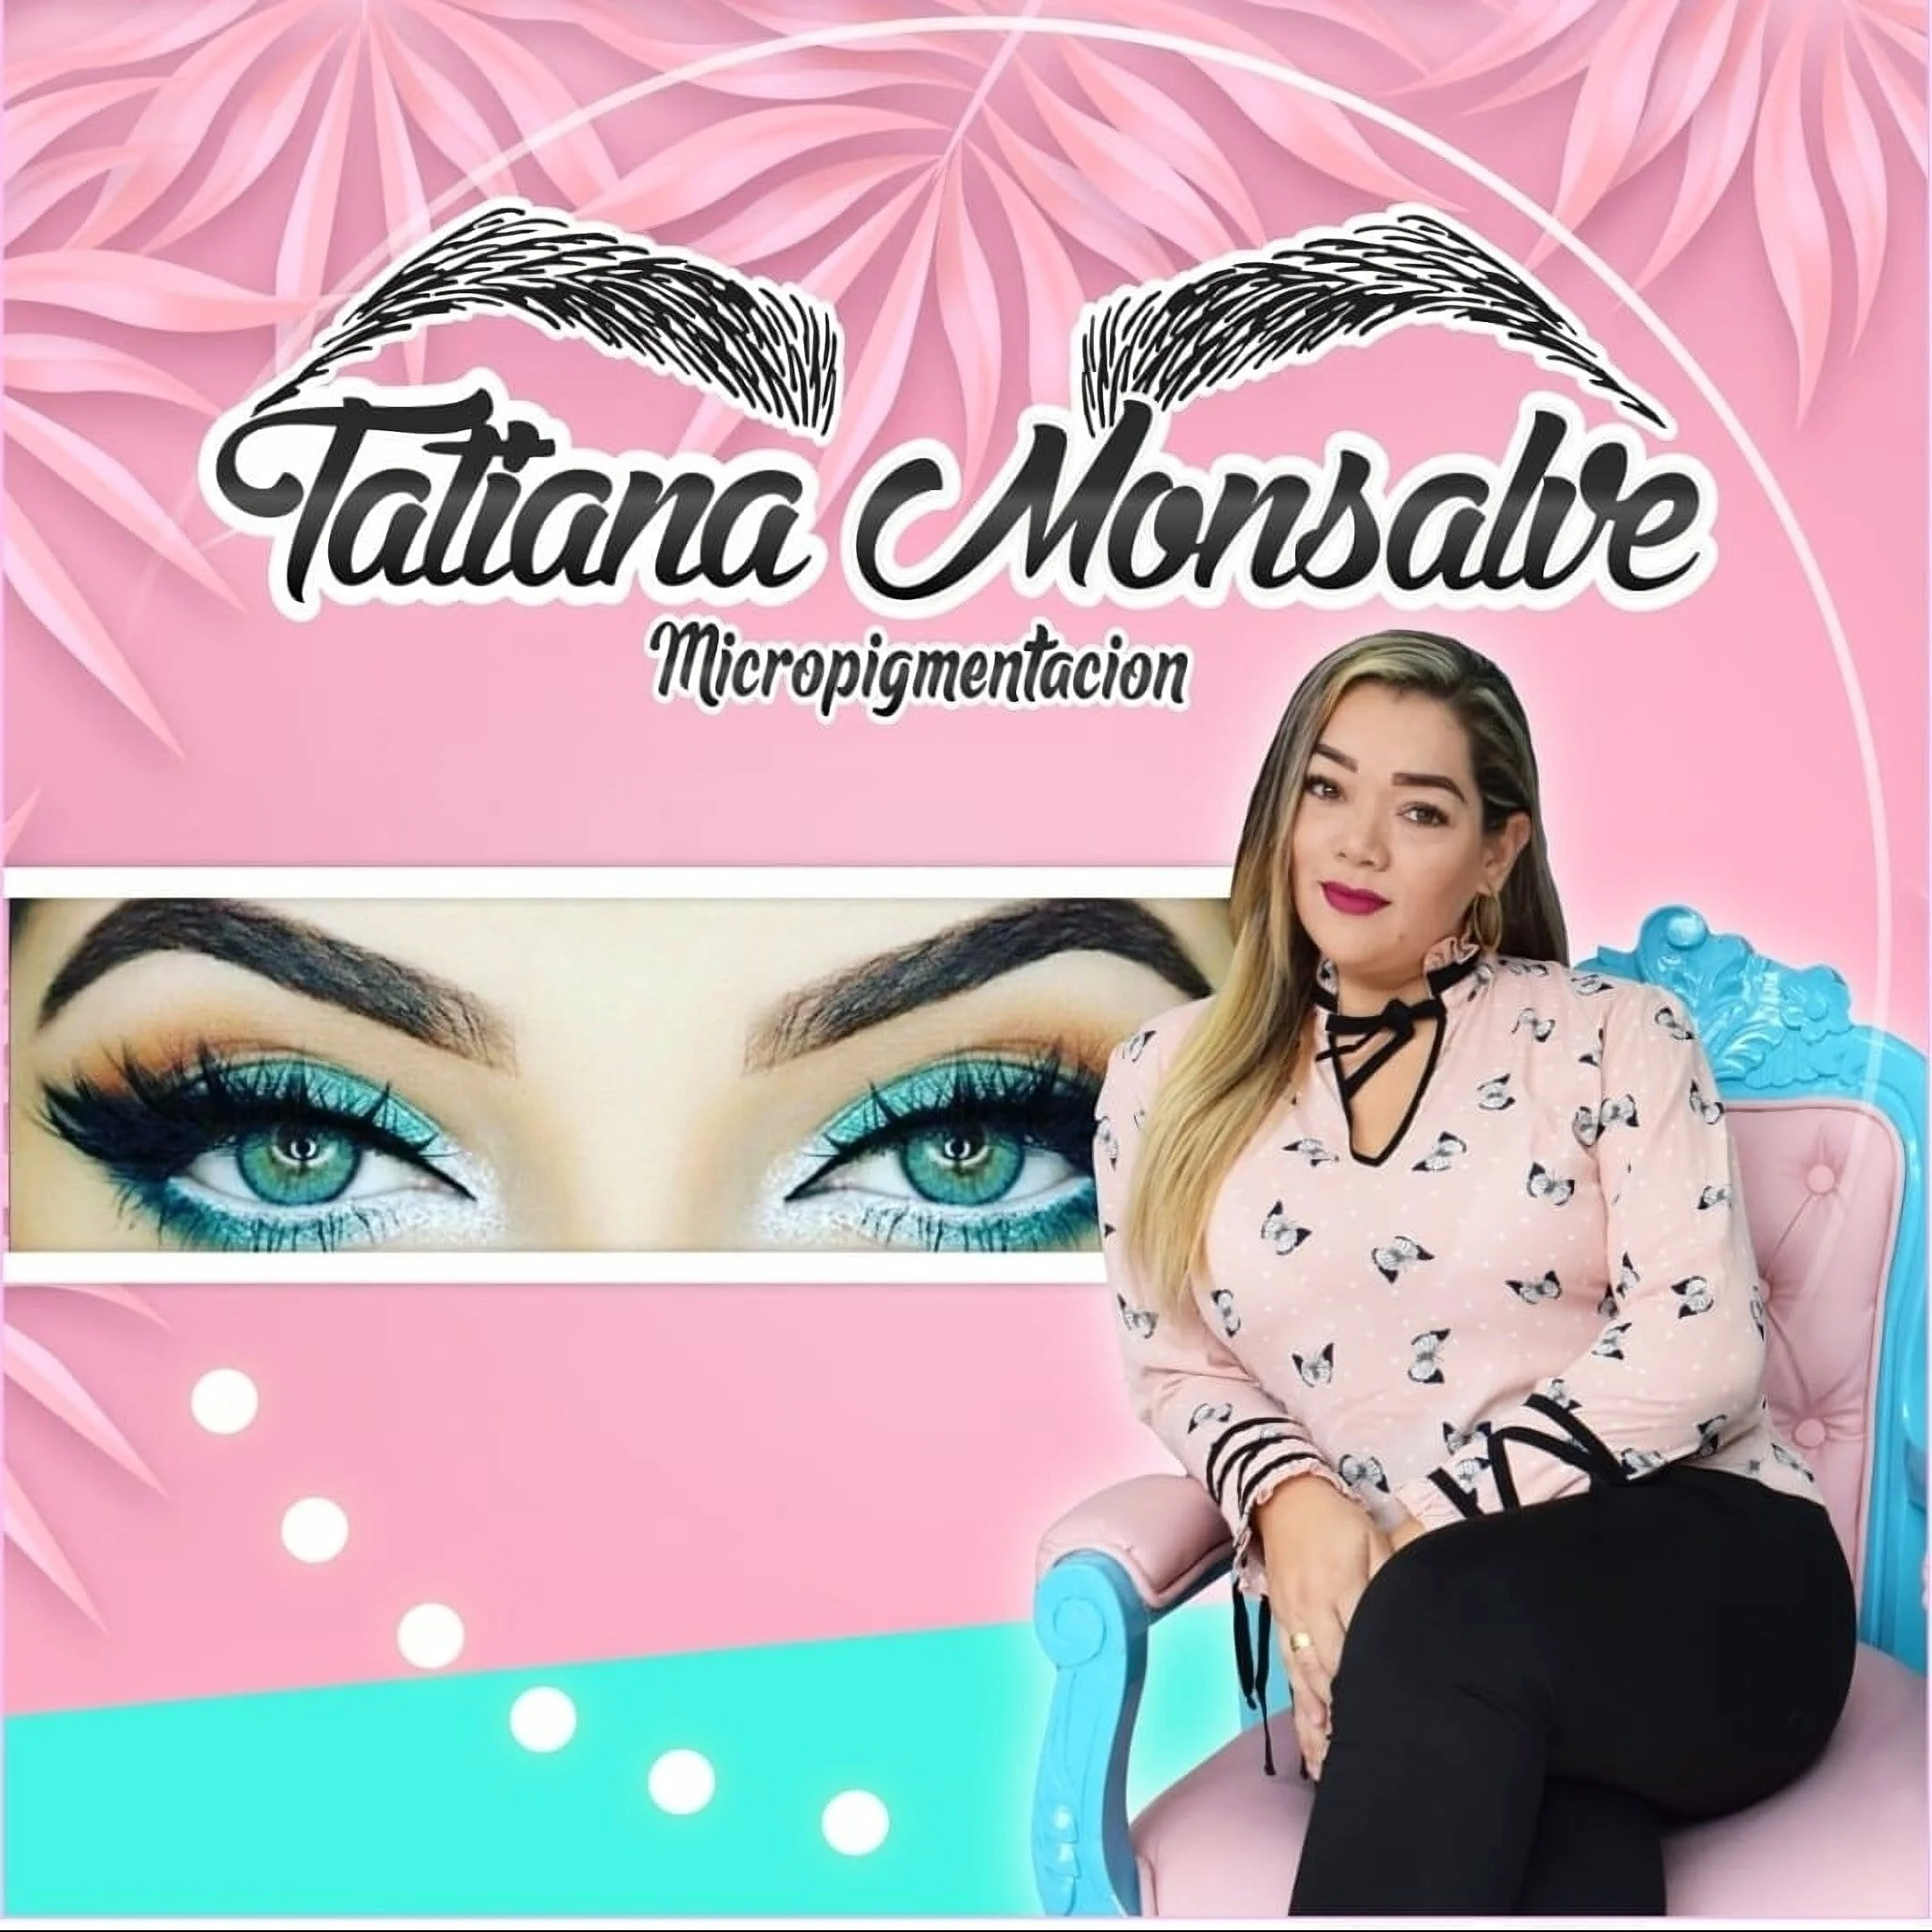 Tatiana monsalve micropigmentación-1109